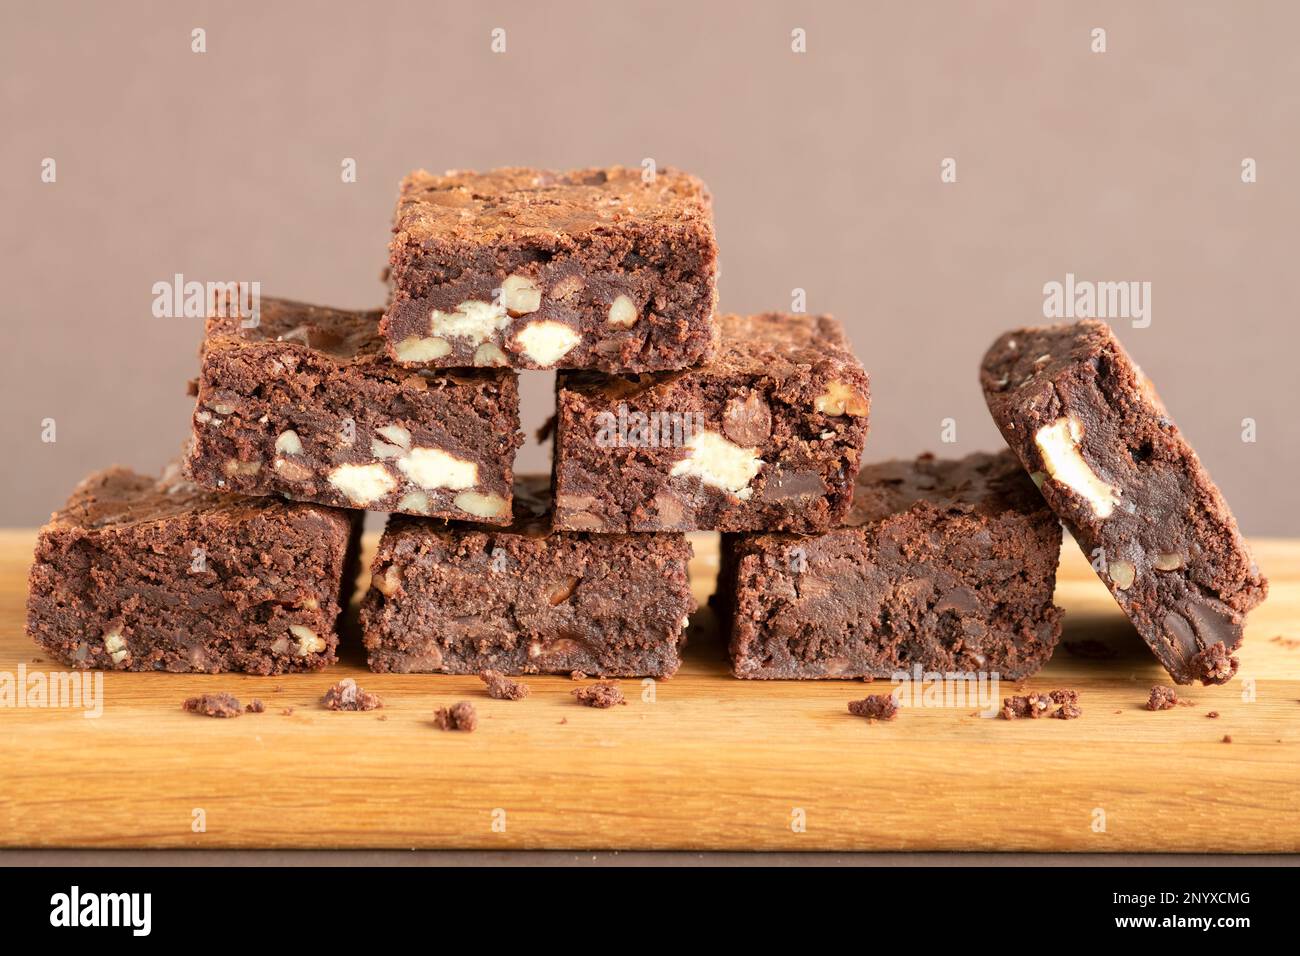 Un lot de trois brownies au chocolat fraîchement cuites sur un plateau en bois. Les brownies sont encore chaudes et très bonnes. un régal Banque D'Images